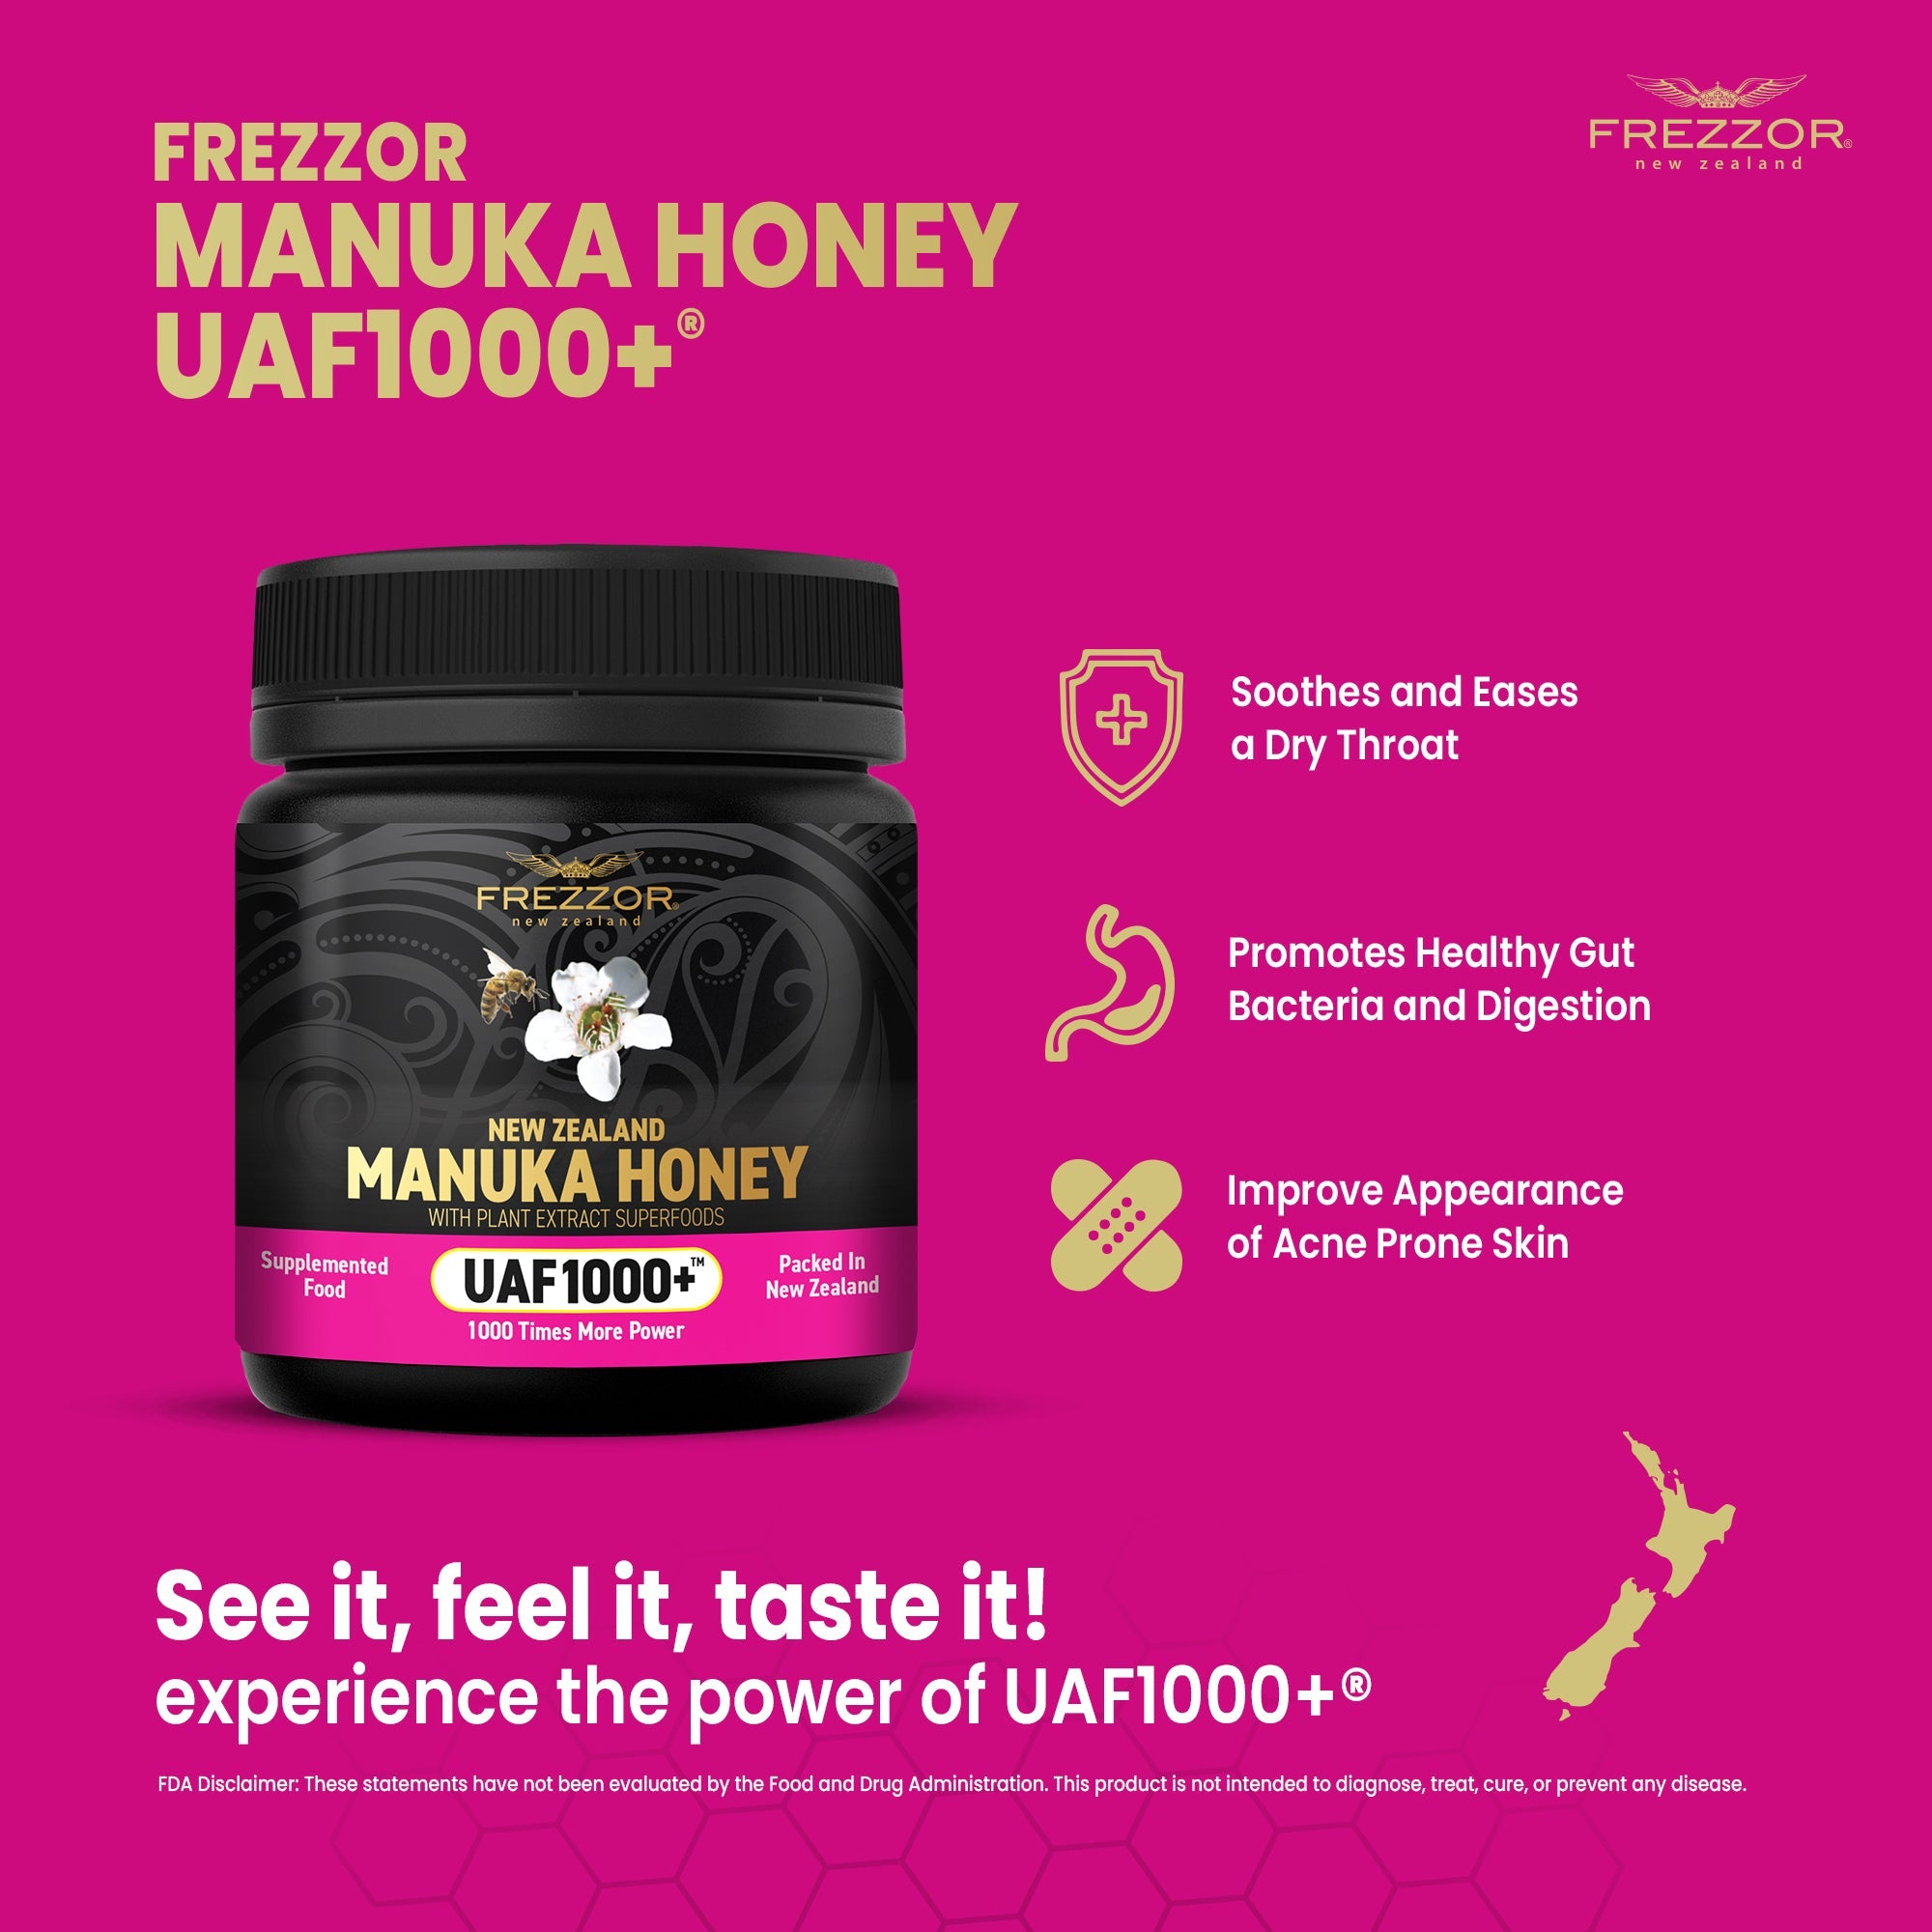 Manuka Honey UAF1000+